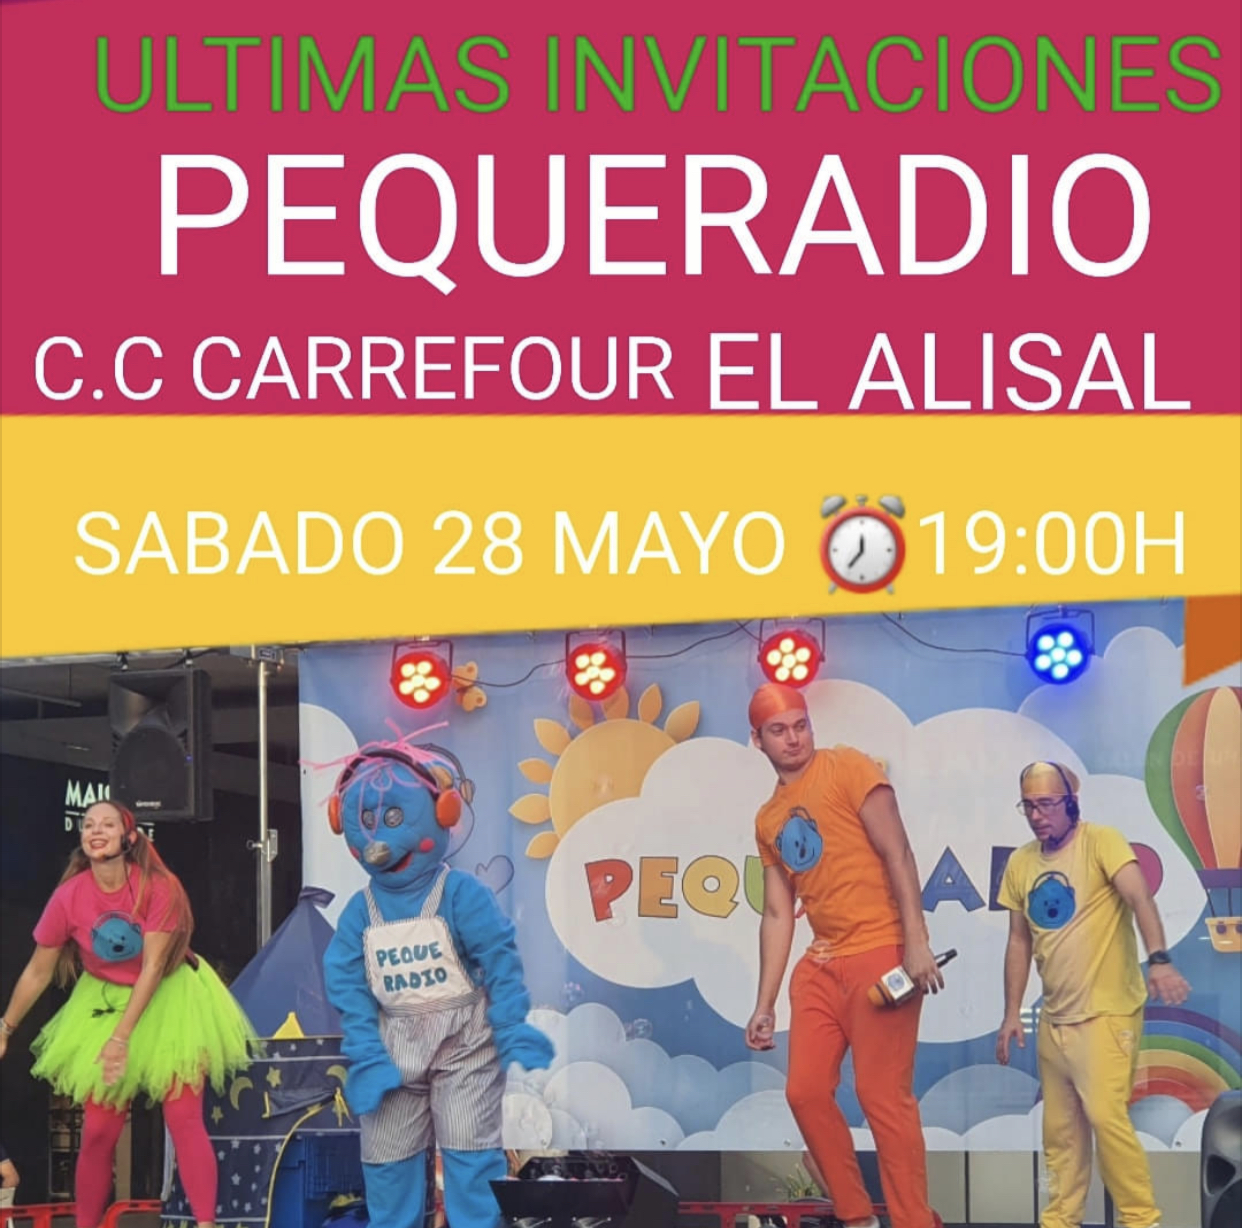 ¡El Gran Musical de Pequeradio! – Centro Comercial Carrefour El Alisal